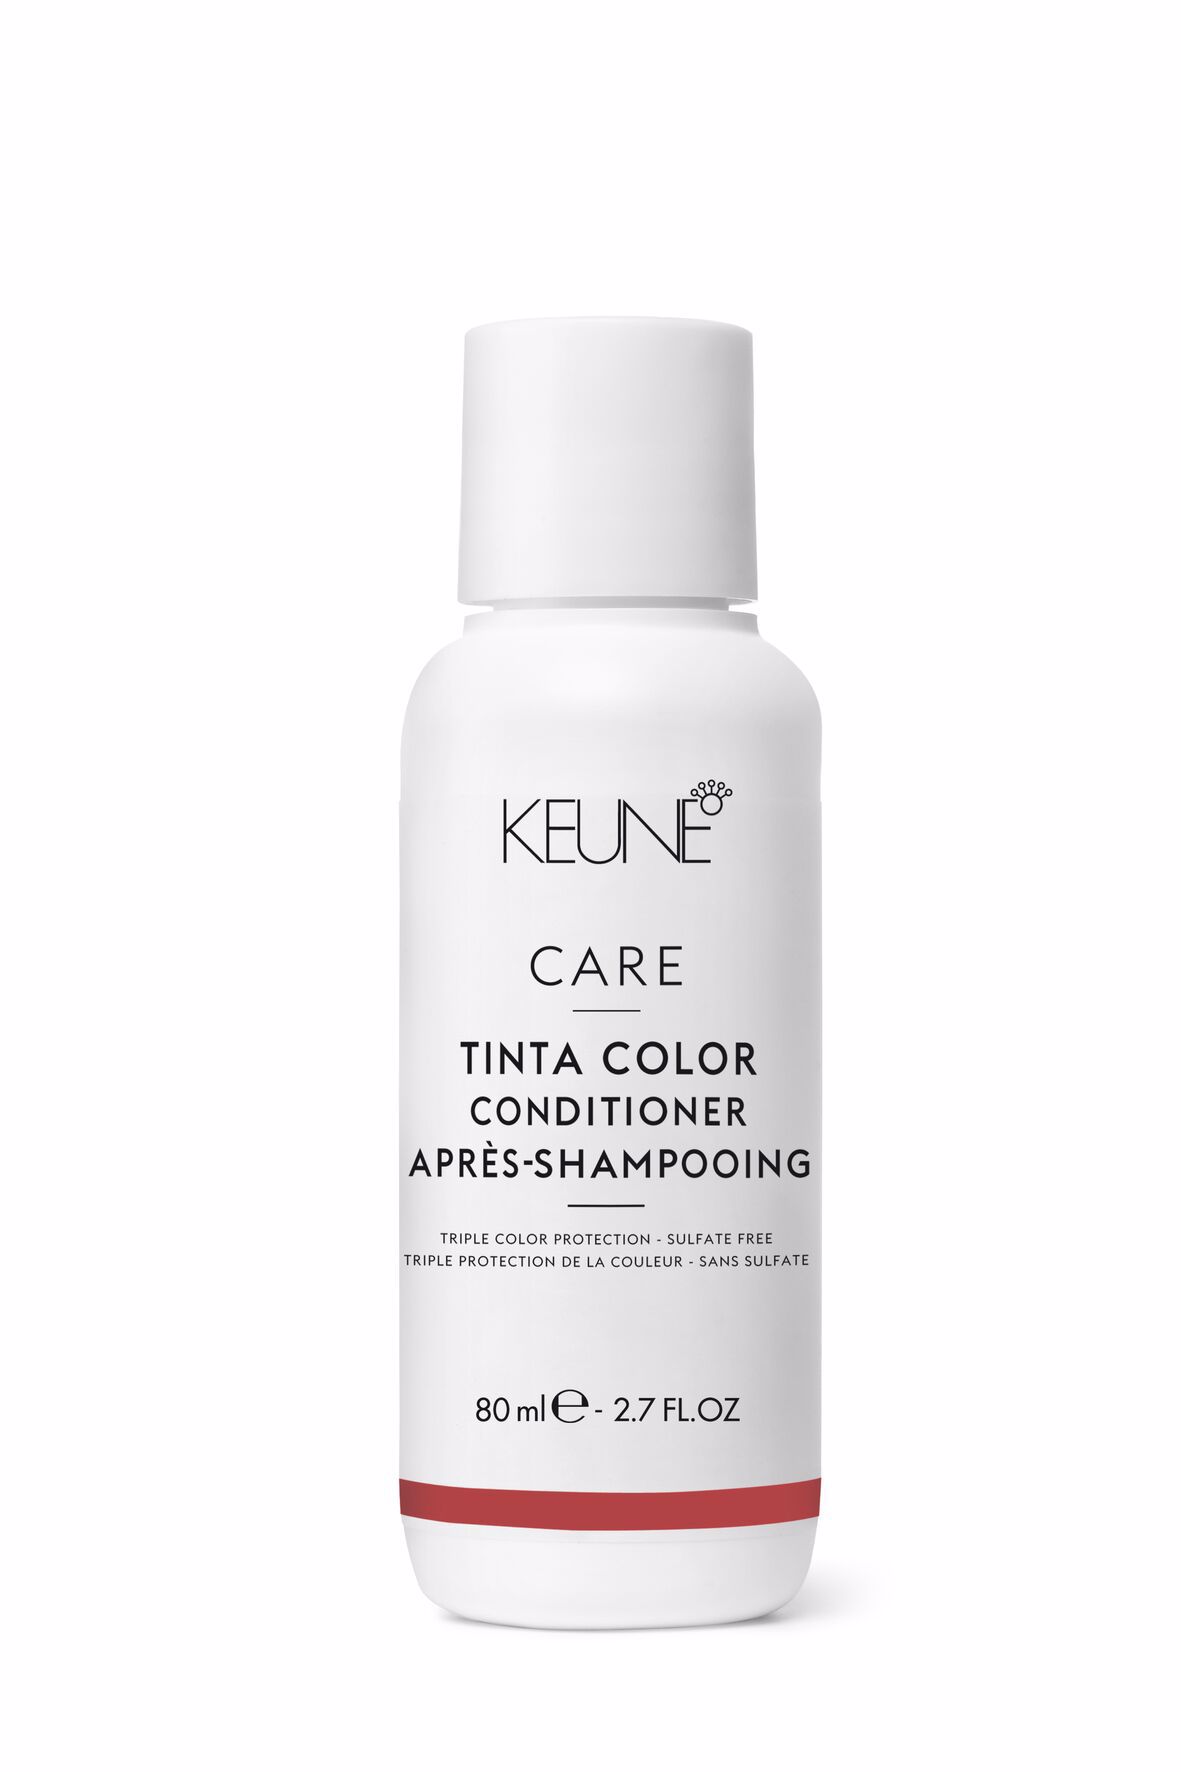 Entdecken Sie Care Tinta Color Conditioner: Haarprodukt, das das Haar revitalisiert und nährt, das Ausbleichen der Farbe verhindert und langanhaltende Farbbrillanz bietet. Glutenfrei. Keune.ch.